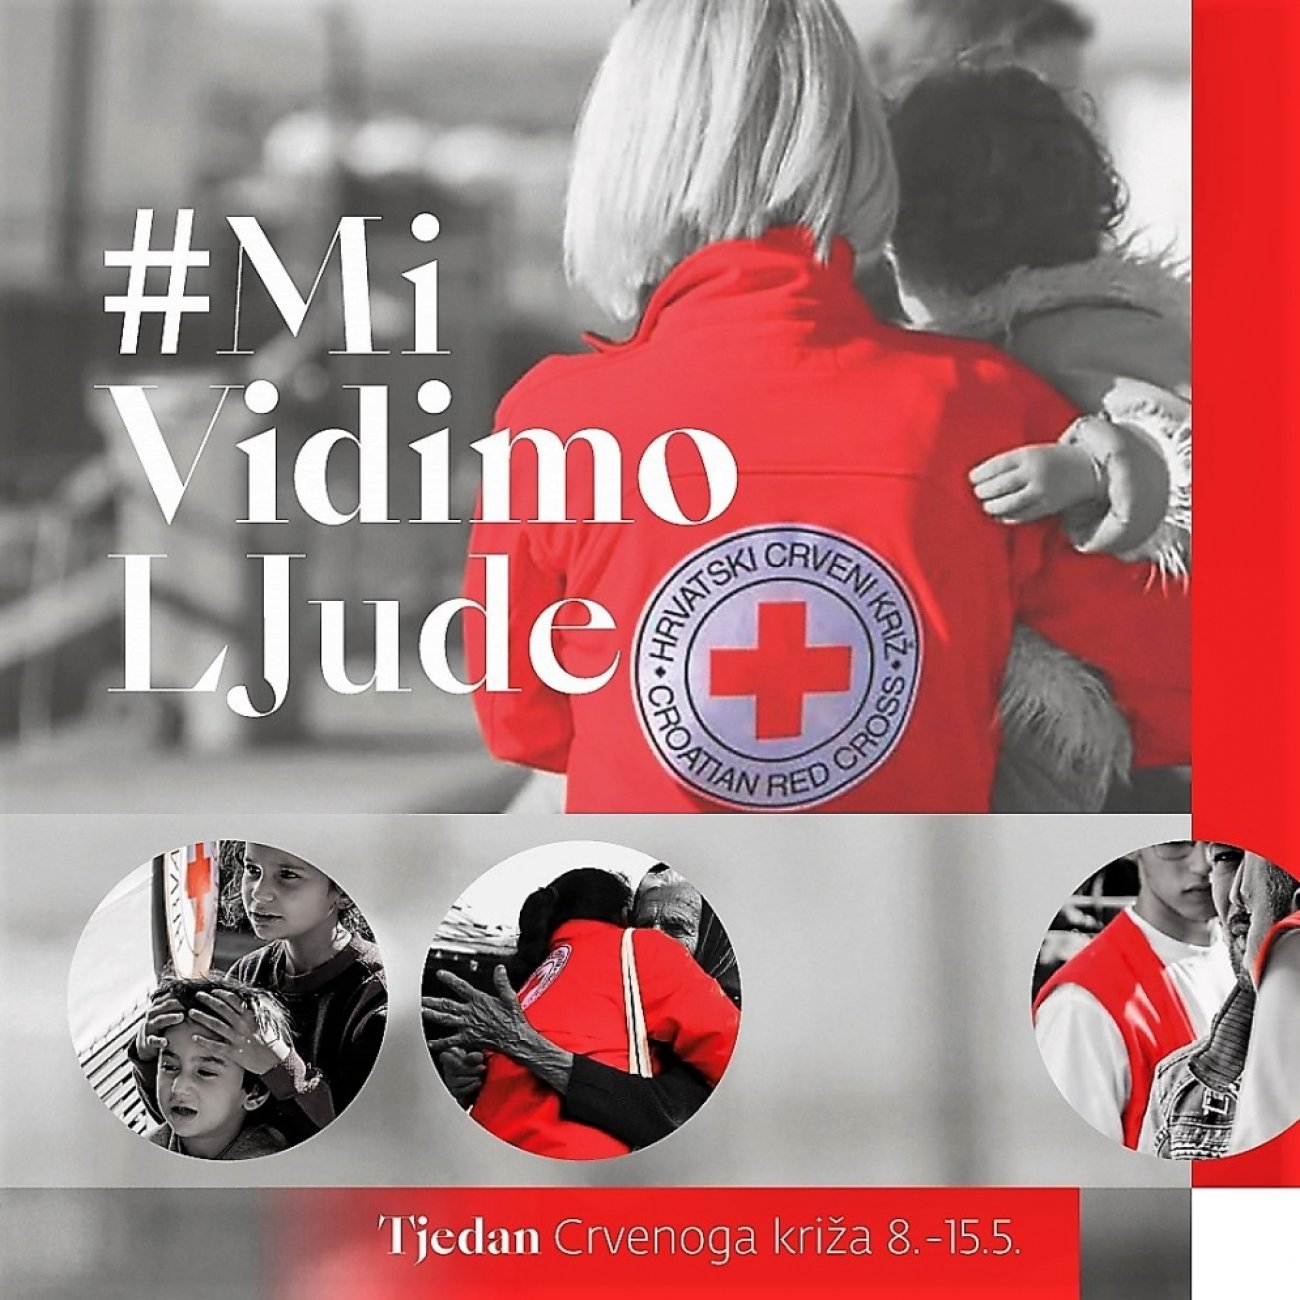 Tjedan Crvenog križa od 8. do 15. svibnja